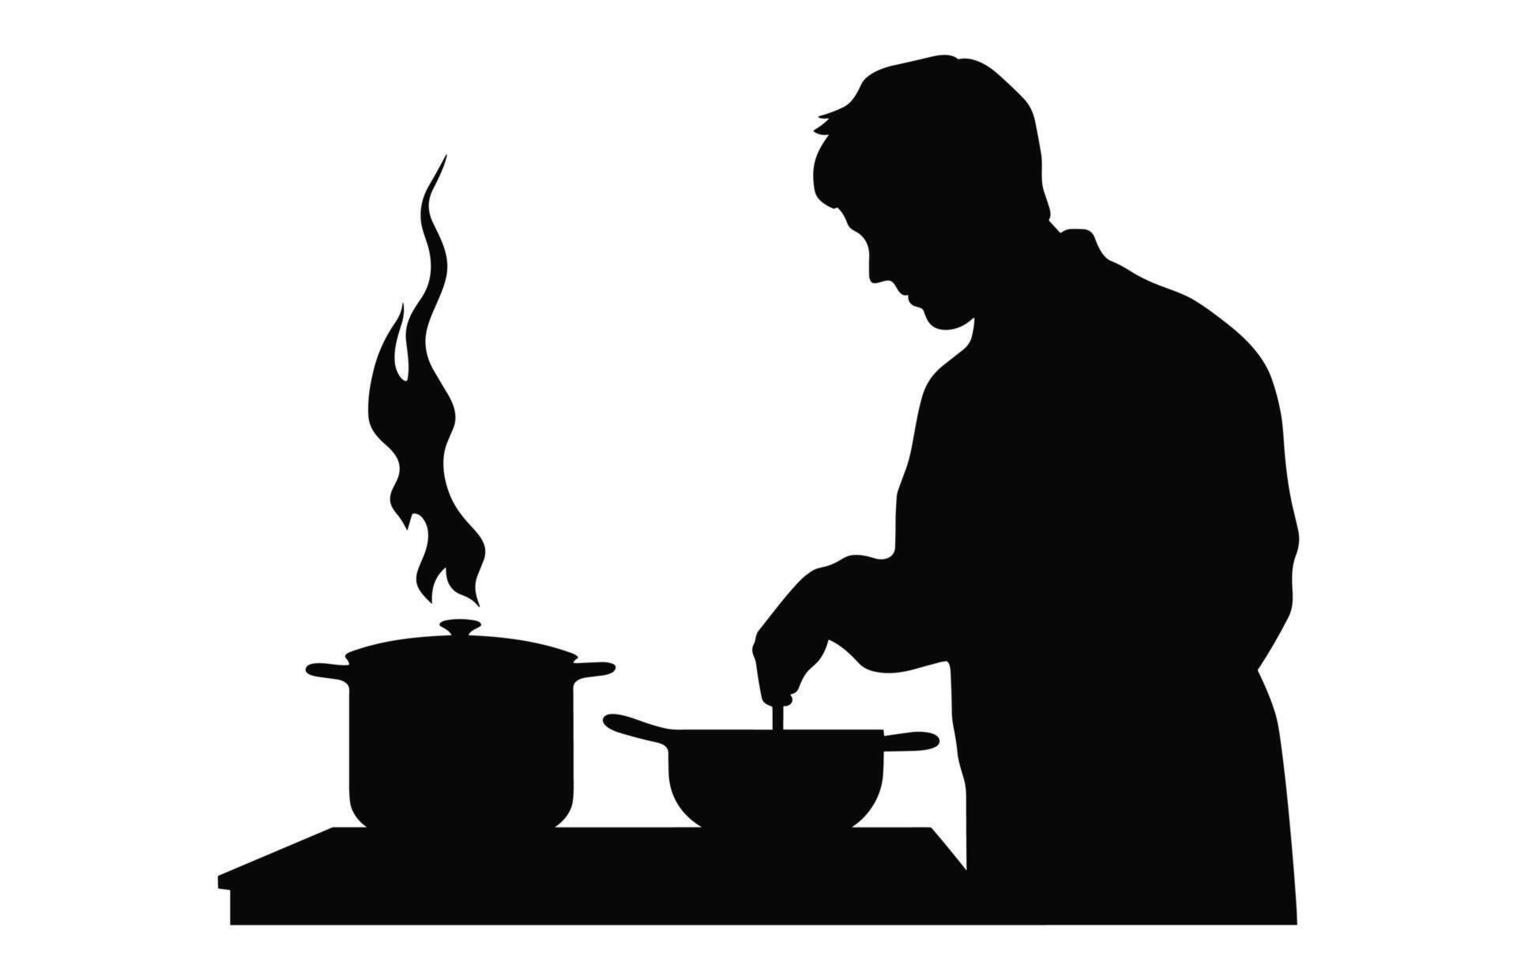 män framställning mat i kök svart ClipArt, man matlagning silhuett vektor isolerat på en vit bakgrund